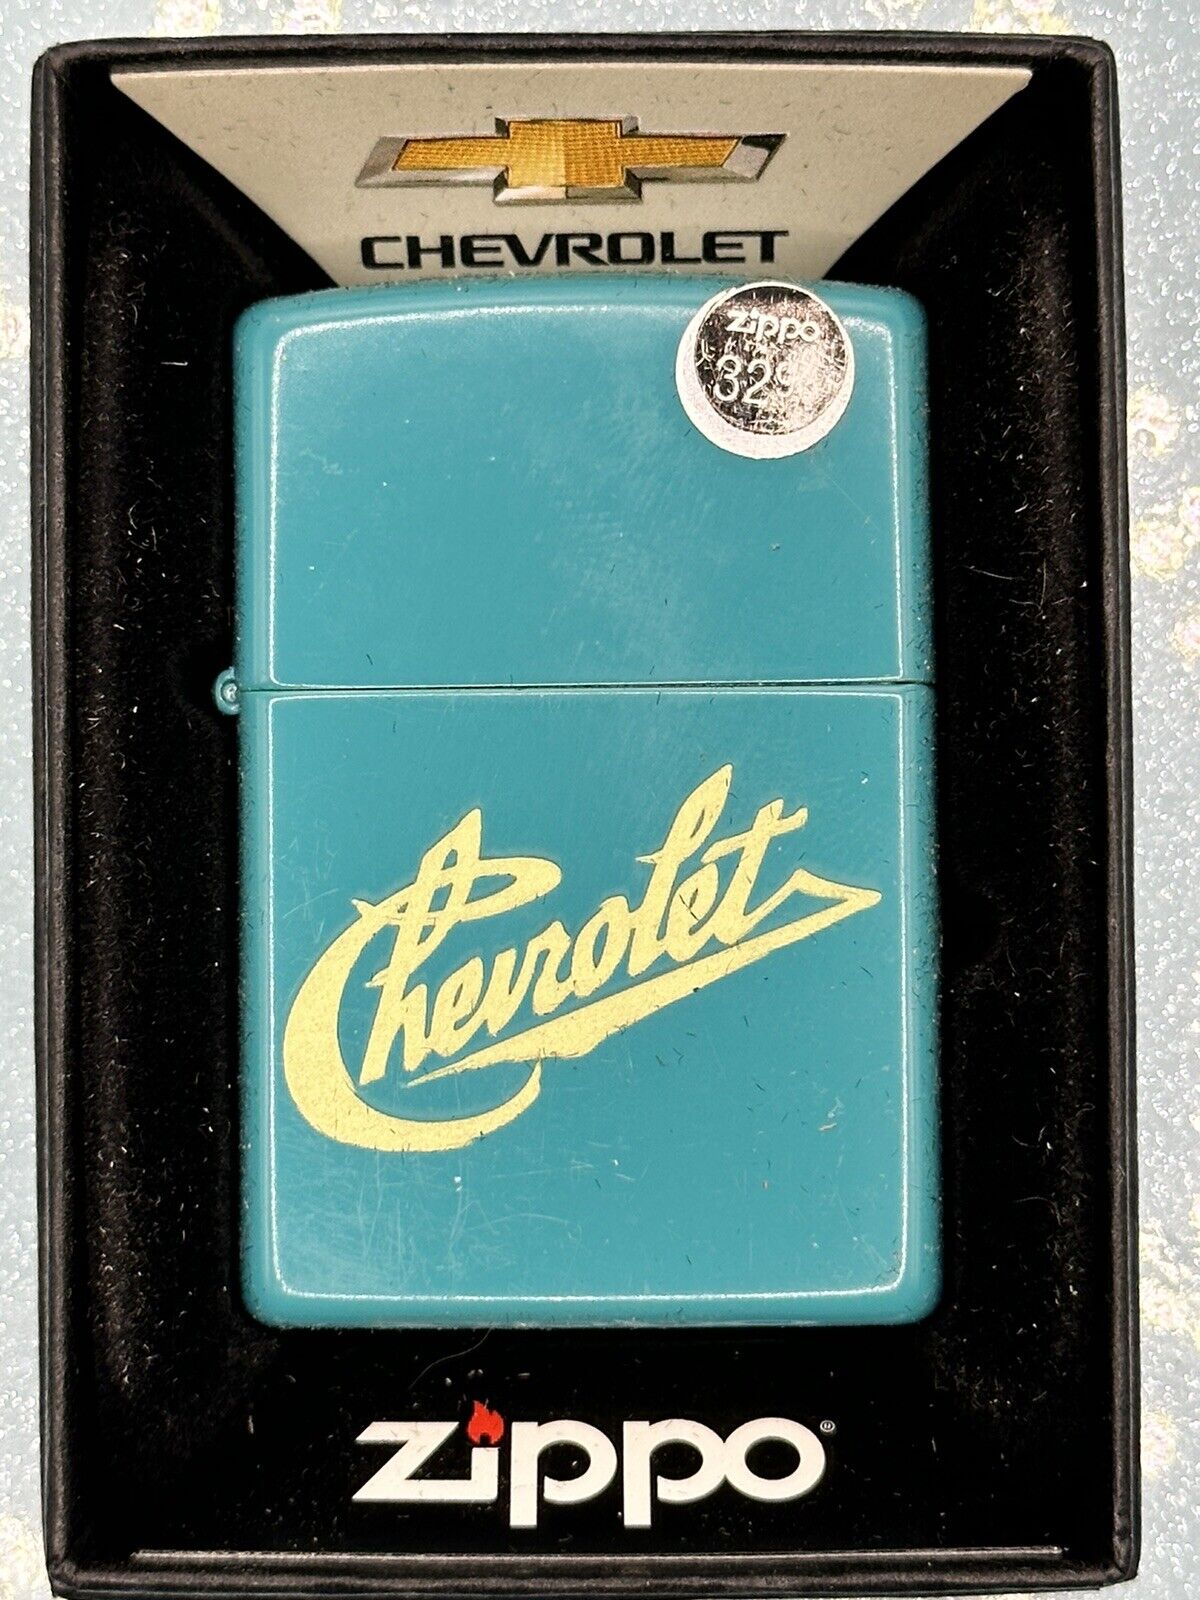 2022 Chevrolet Turquoise Blue Zippo Lighter NEW